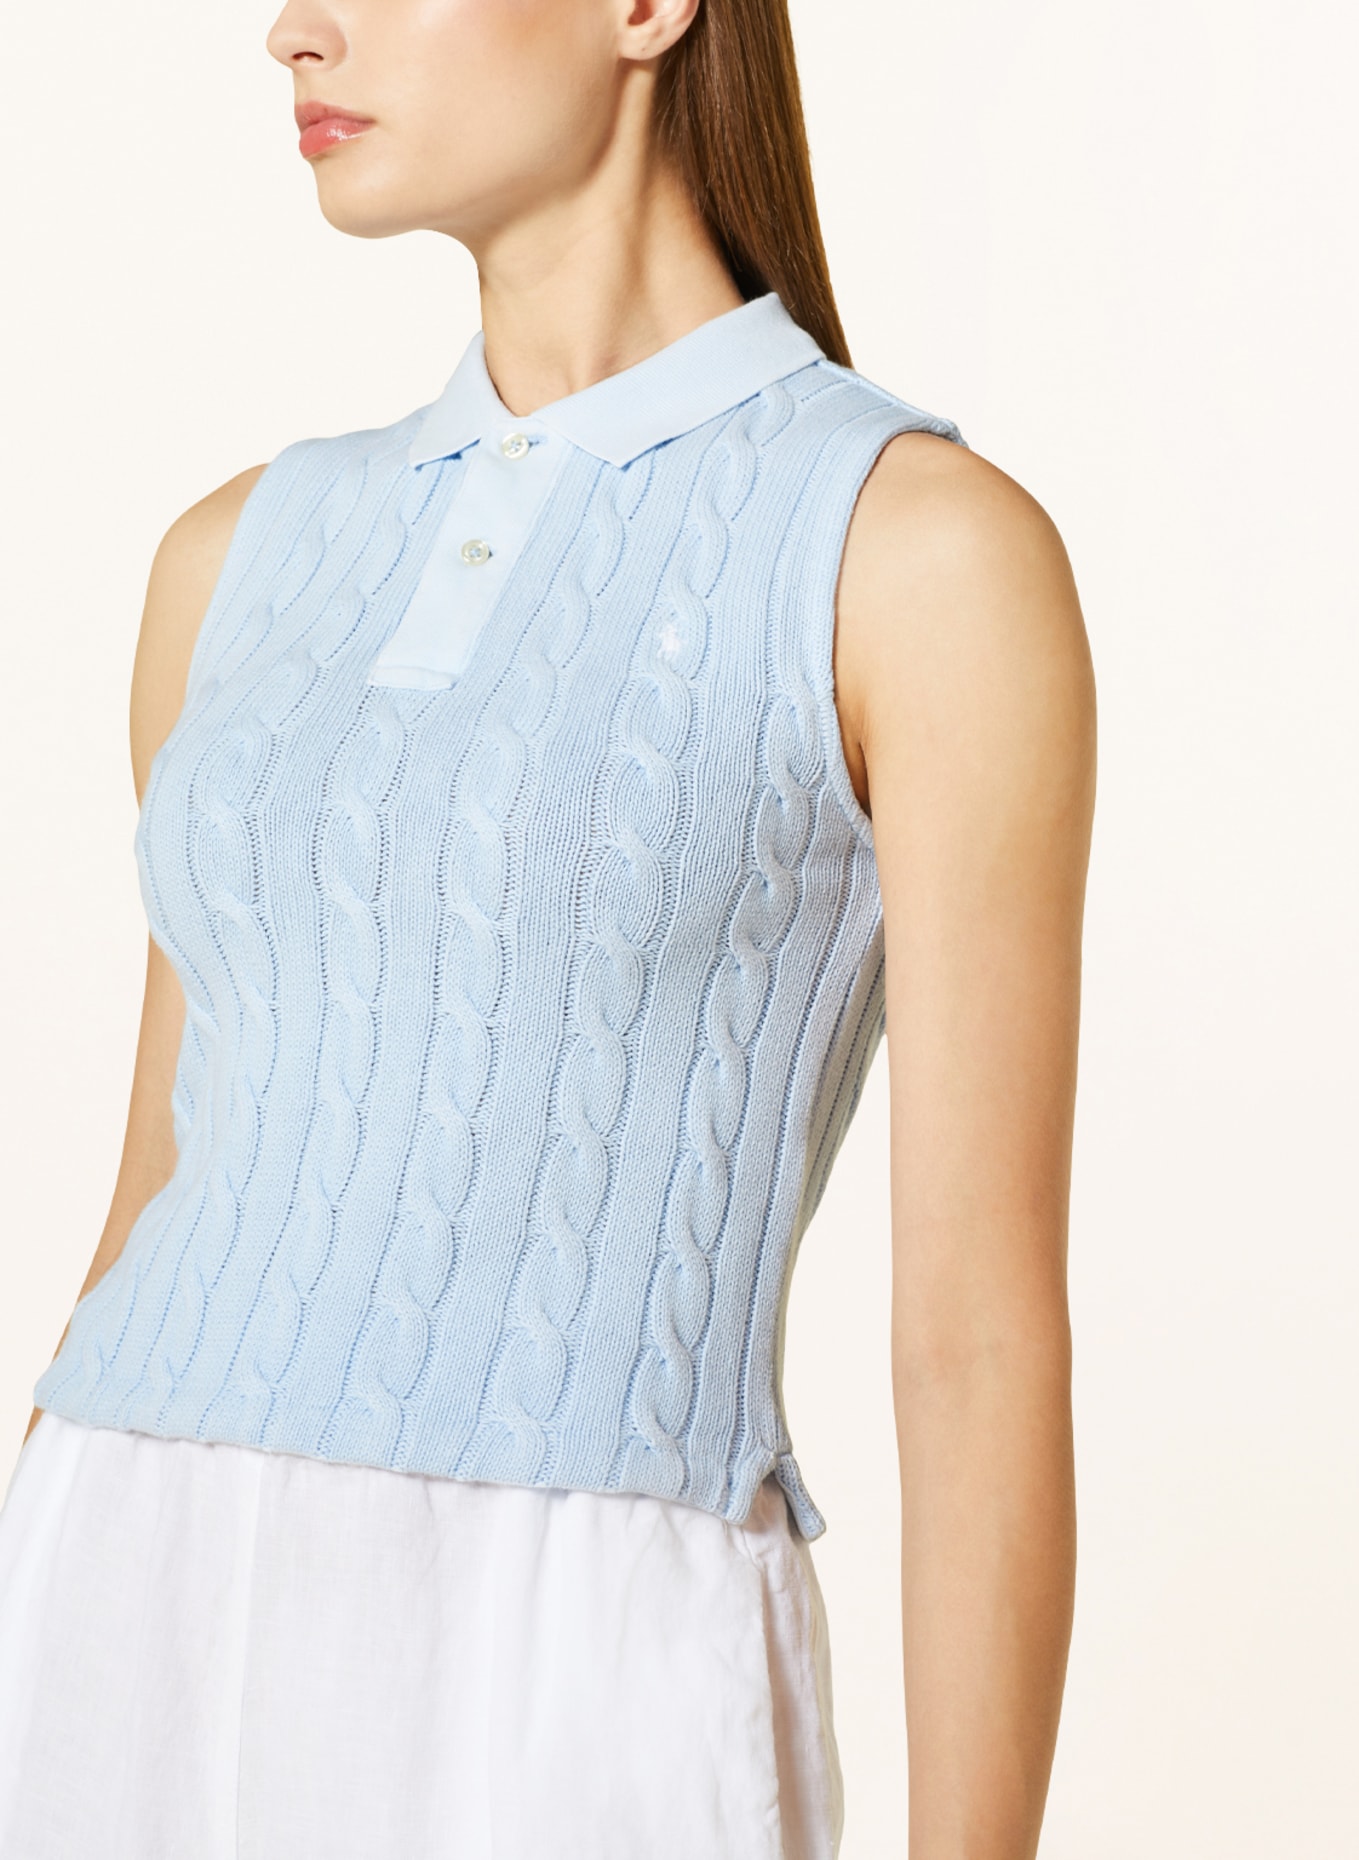 $90 Lauren Ralph Lauren Women's Blue Sleeveless Cable Knit Tank